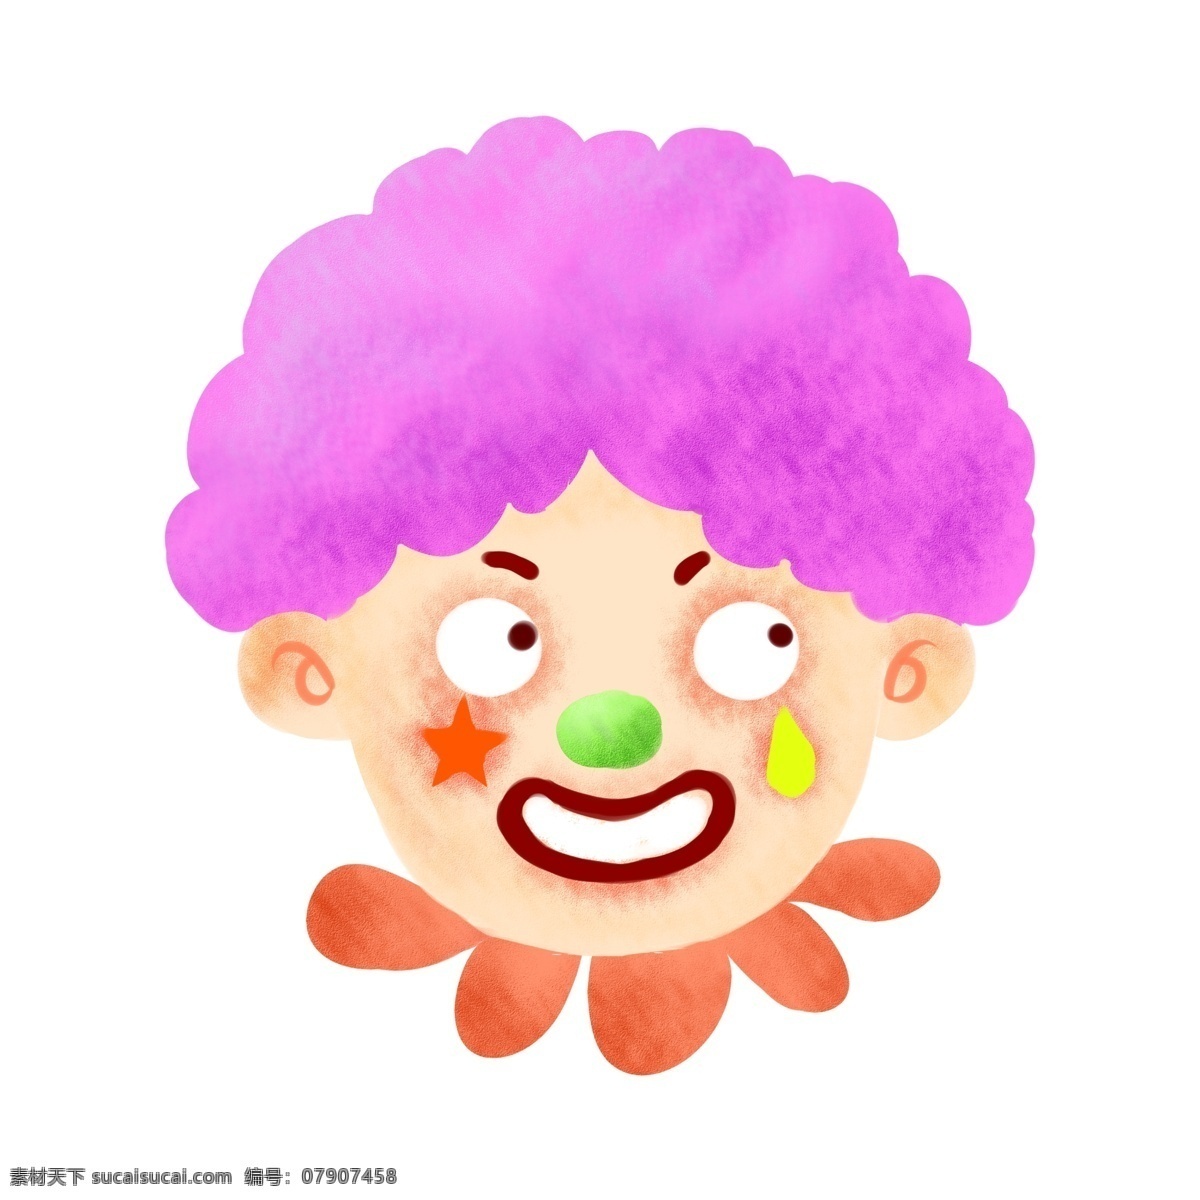 愚人节 表演 才艺 小丑 愚人节小丑 表演才艺小丑 可爱的小丑 漂亮的小丑 小丑装饰 小丑插画 紫色的头发